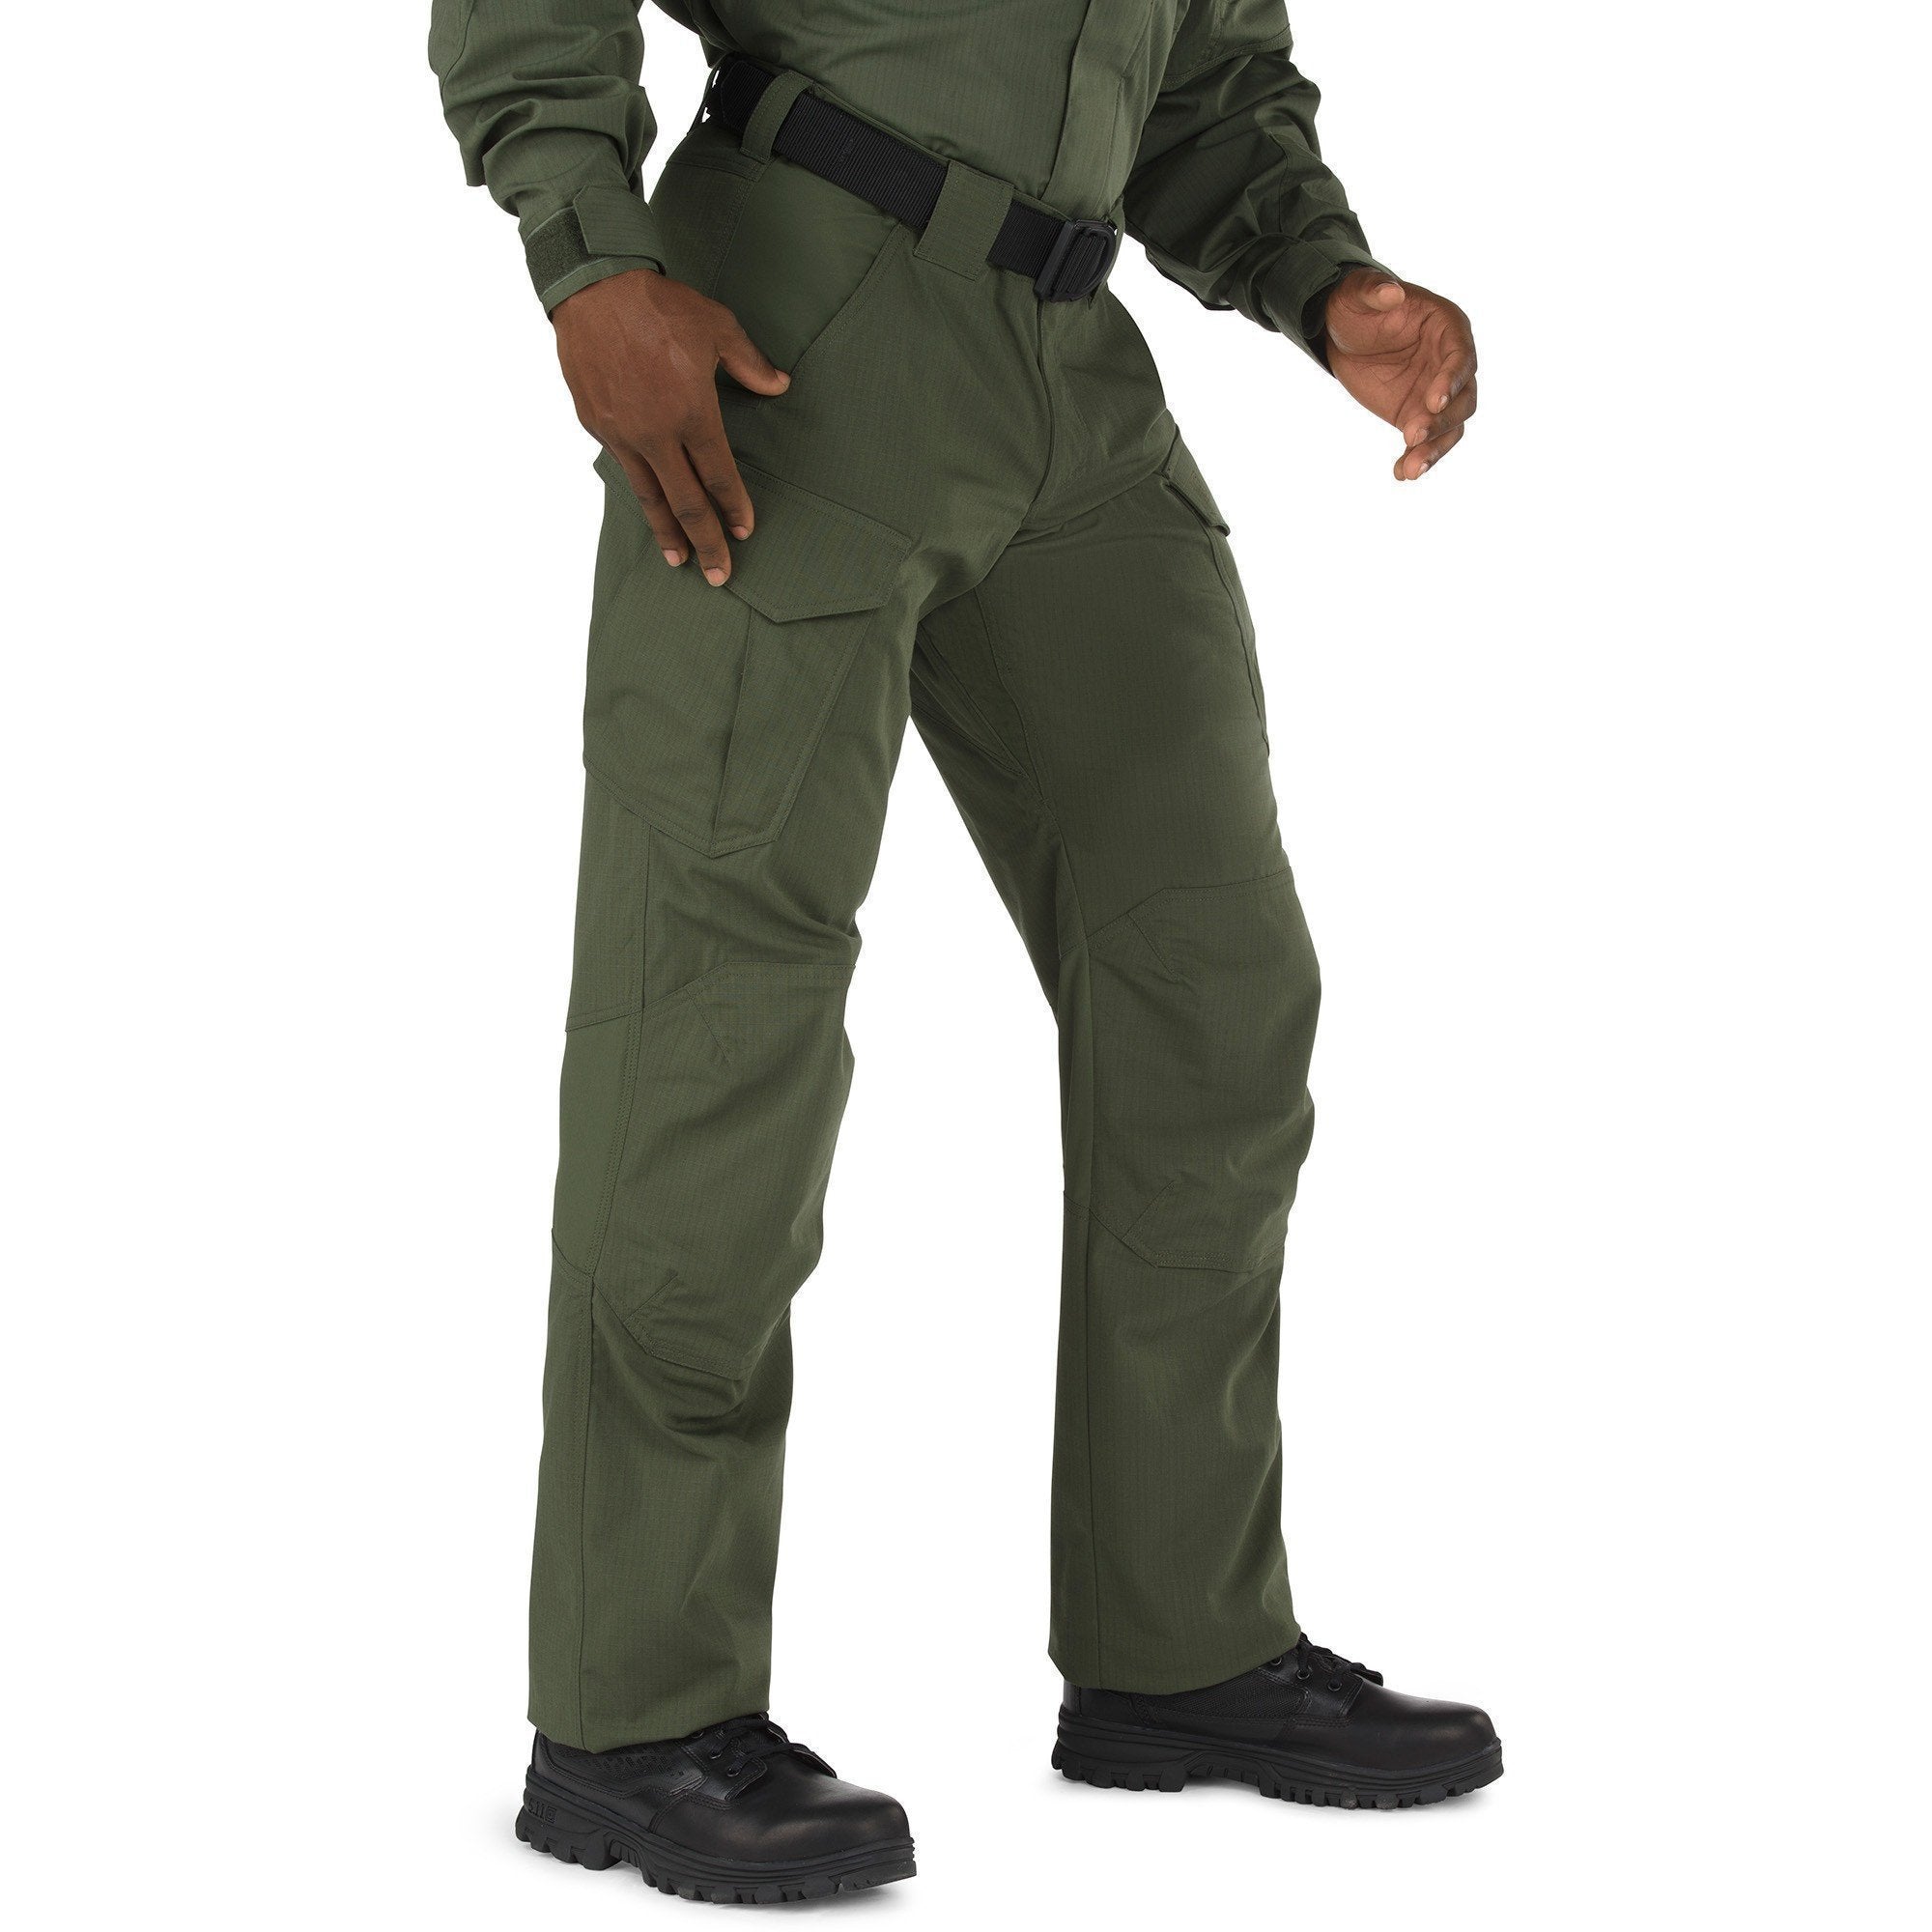 5.11 Tactical Stryke TDU Pants - TDU Green Pants 5.11 Tactical 28 28 Tactical Gear Supplier Tactical Distributors Australia